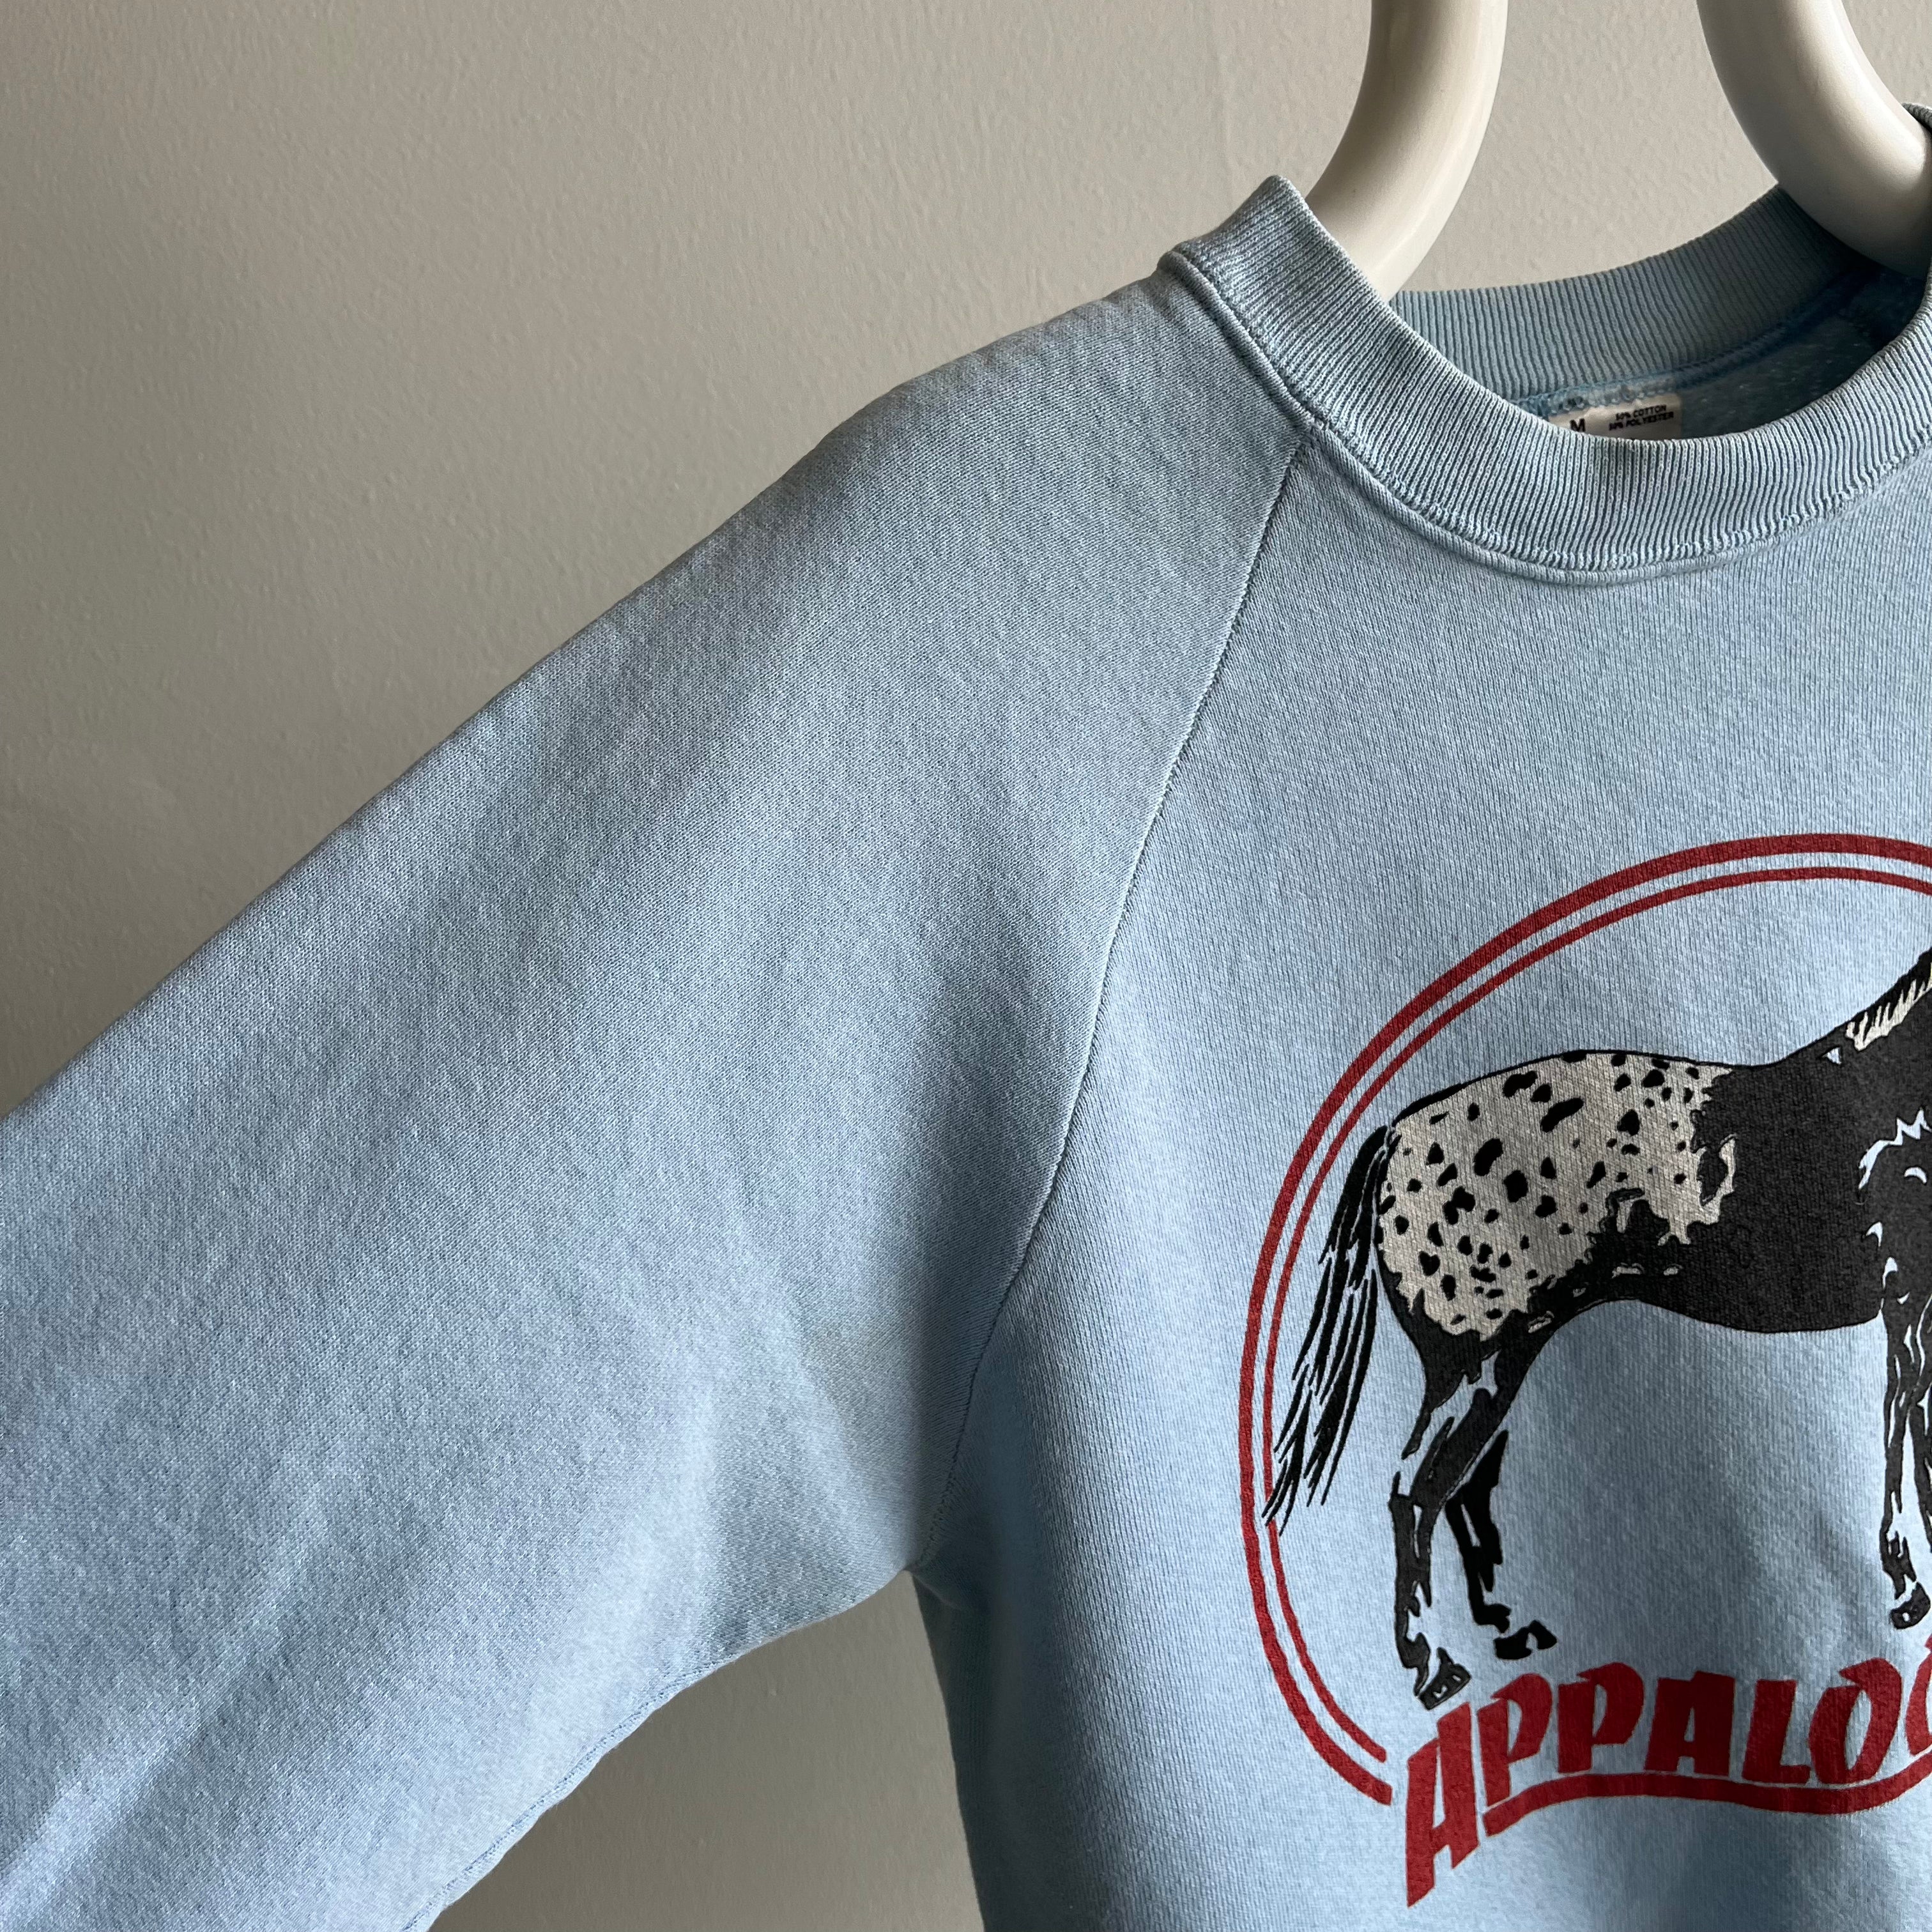 1980s Appaloosa Sweatshirt by FOTL - OMG!